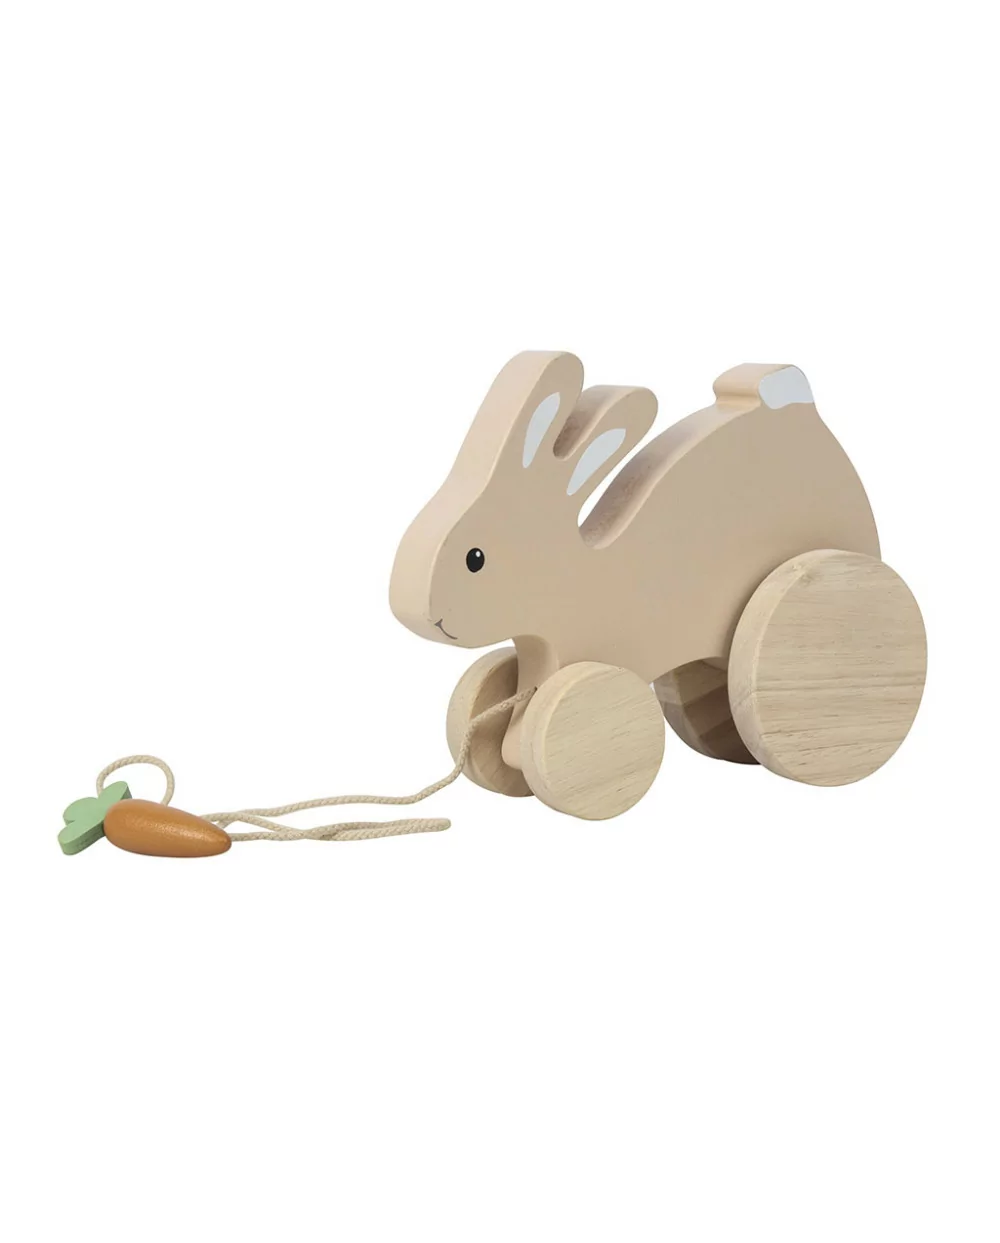 Trainabile Rabbit Egmont Toys